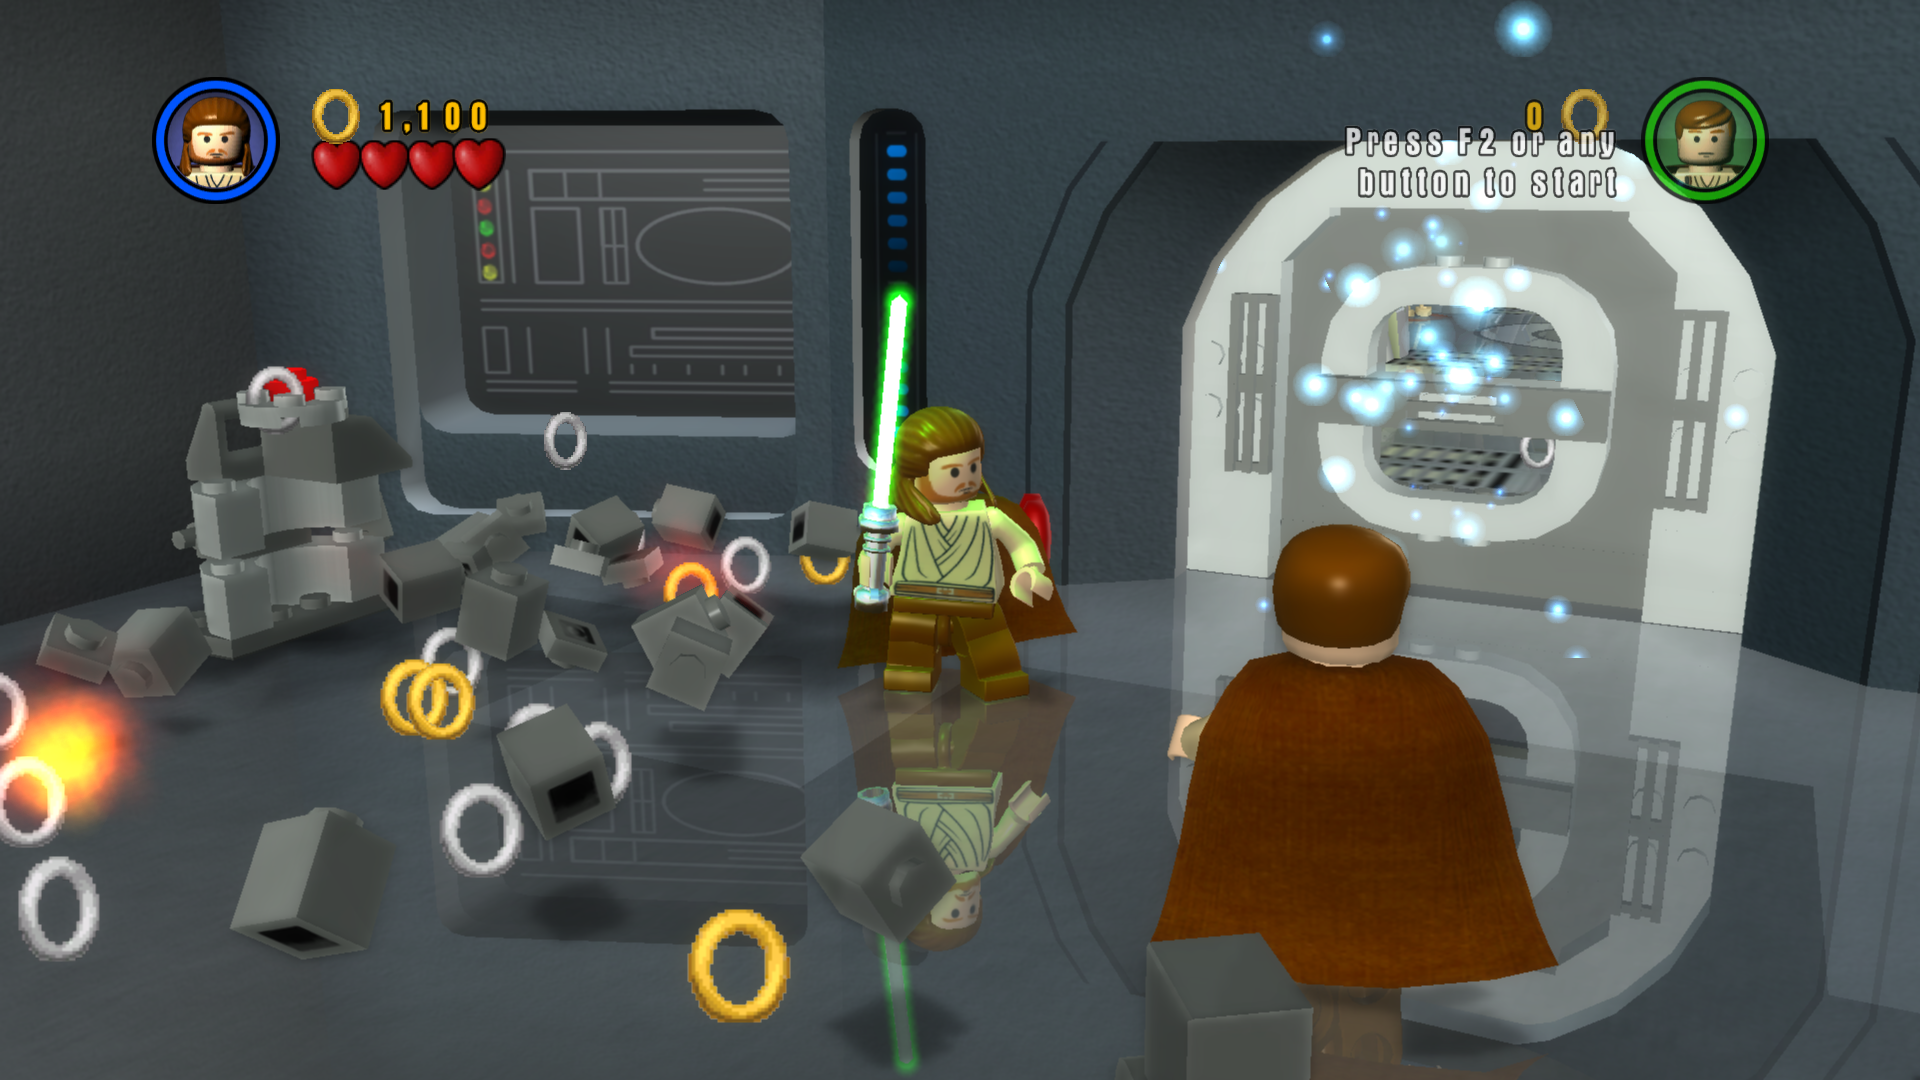 fordomme Håndbog loop Image 1 - Rings Over Studs mod for LEGO Star Wars: The Complete Saga - Mod  DB